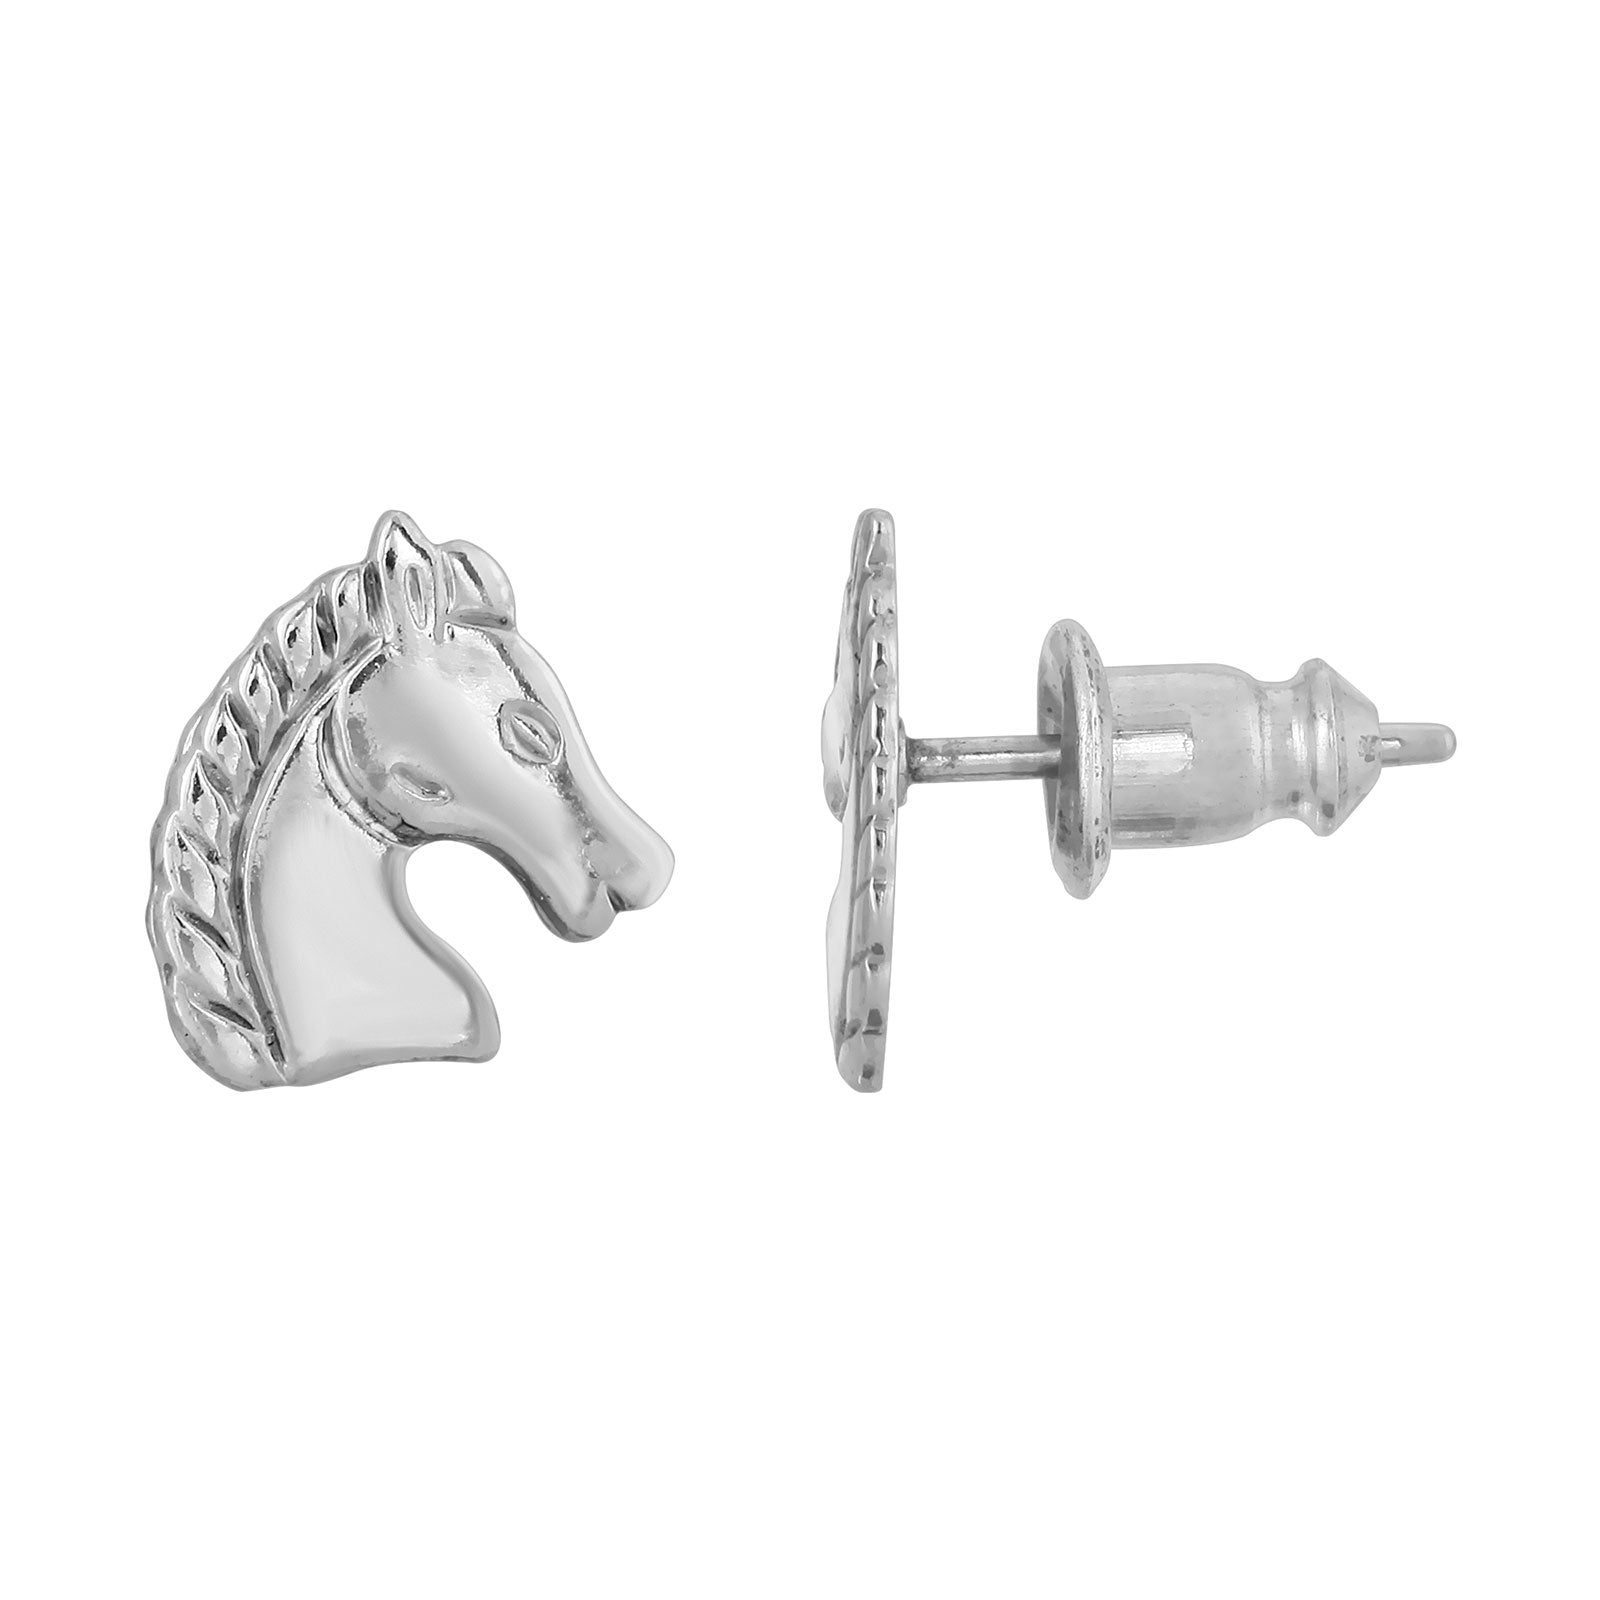 Silver-Tone Horse Stud Earrings